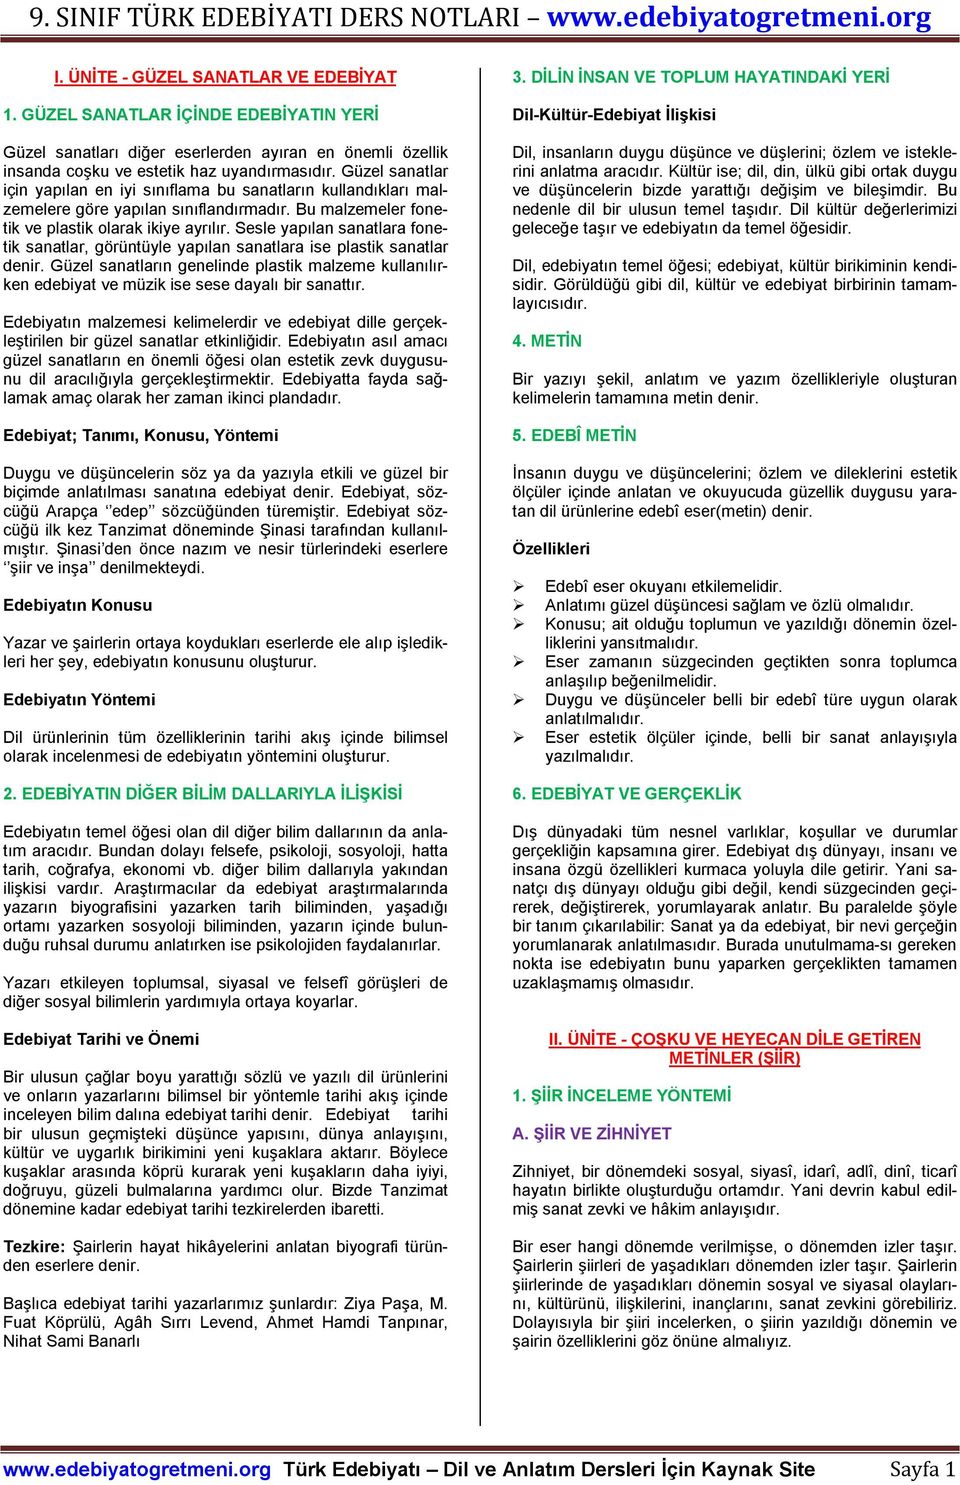 9. SINIF DİL VE ANLATIM DERS NOTLARI - PDF Free Download